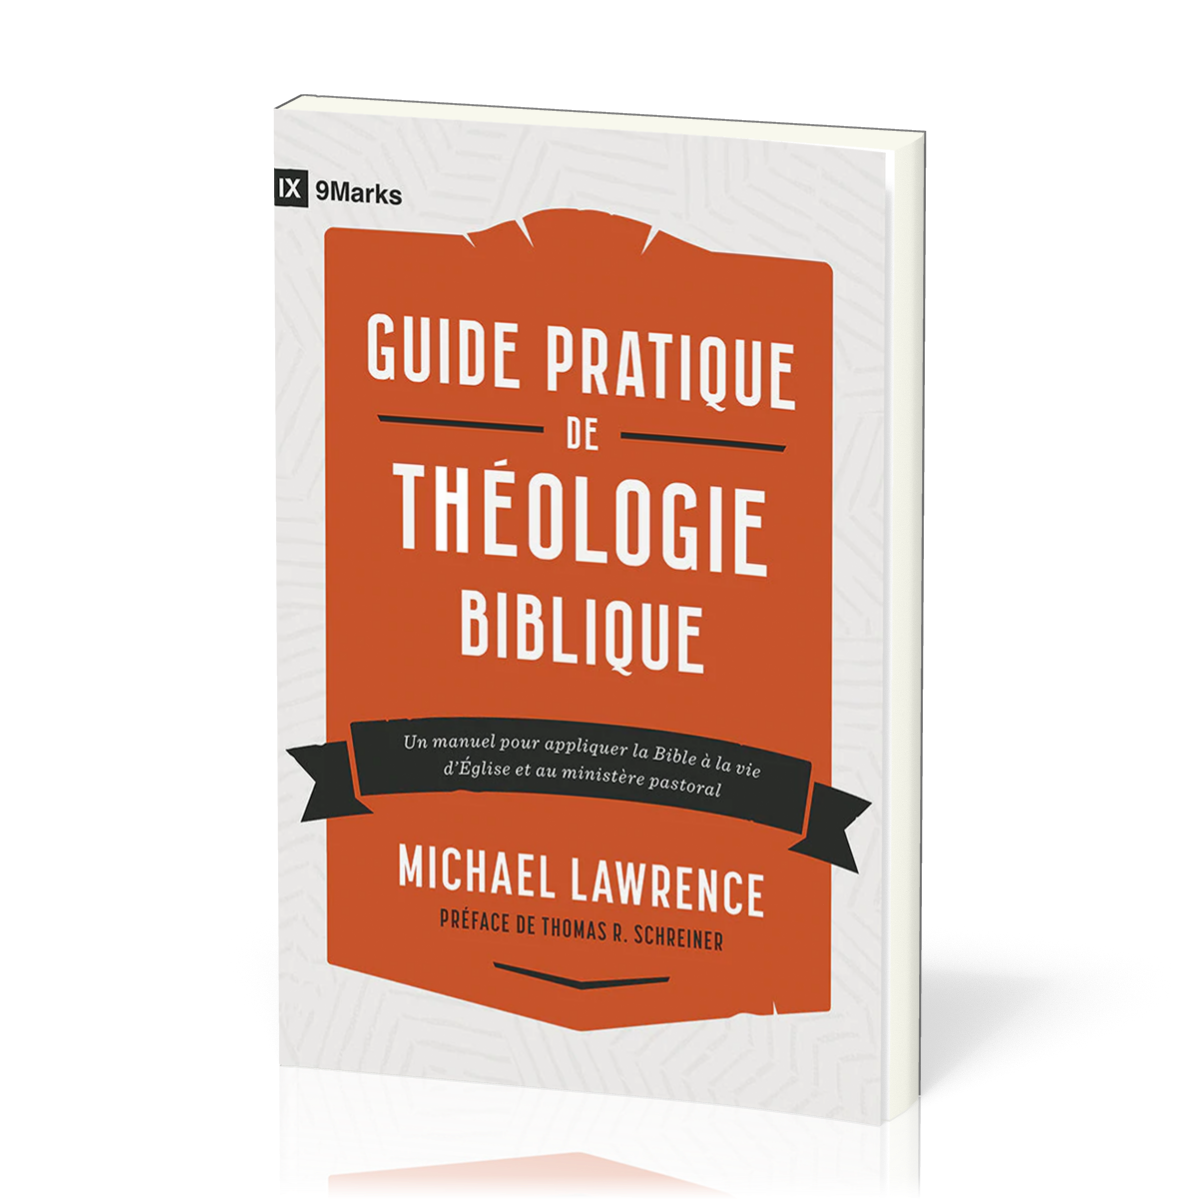 Guide pratique de théologie biblique - Un manuel pour appliquer la Bible à la vie d'Église et au ministère pastoral [coll. 9Mark